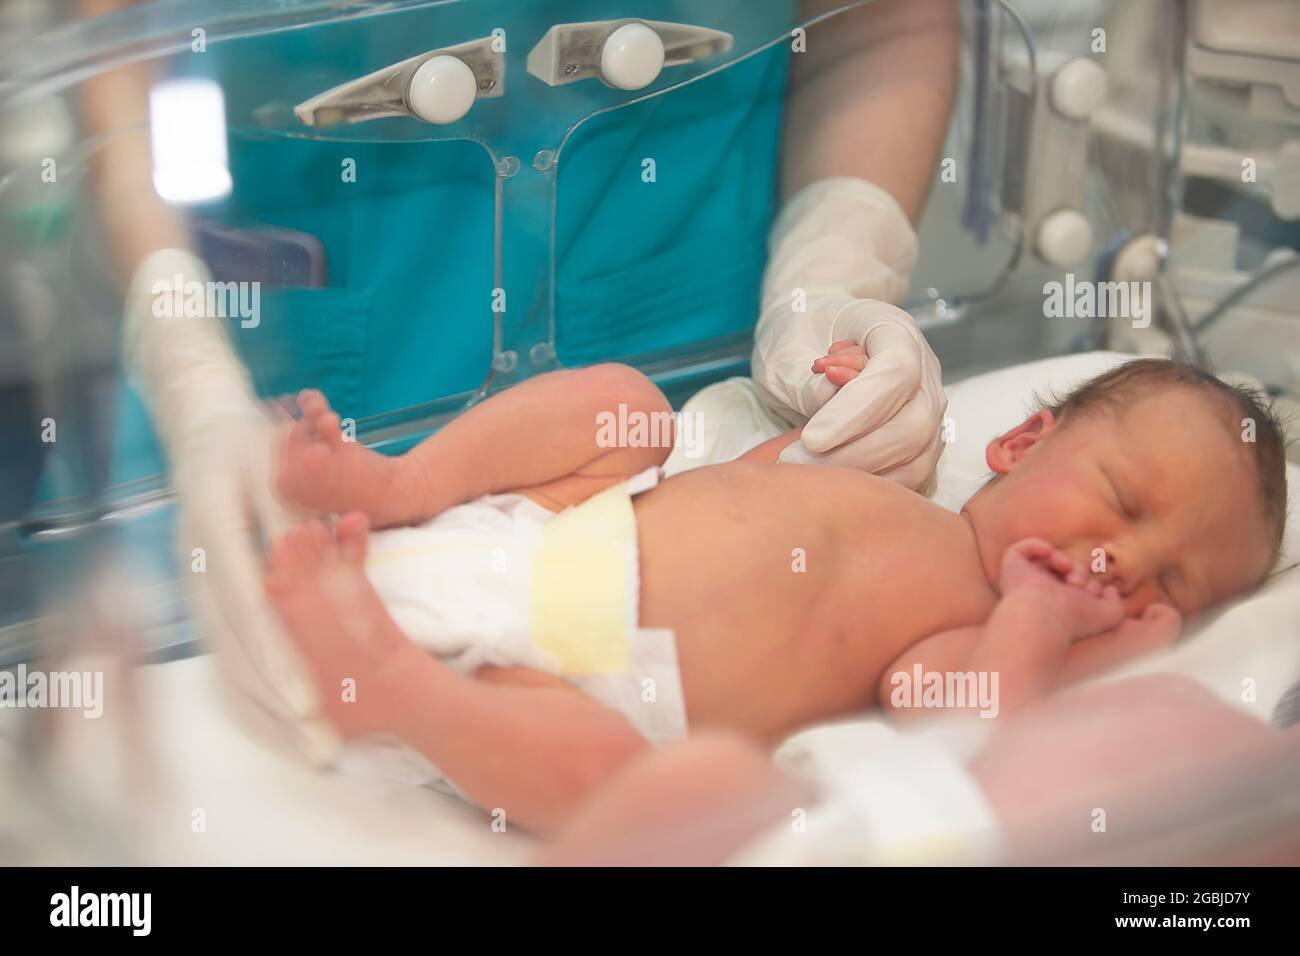 Le mani del medico in guanti di gomma stanno tenendo le dita piccole di un neonato che si trova nella scatola medica. Foto Stock